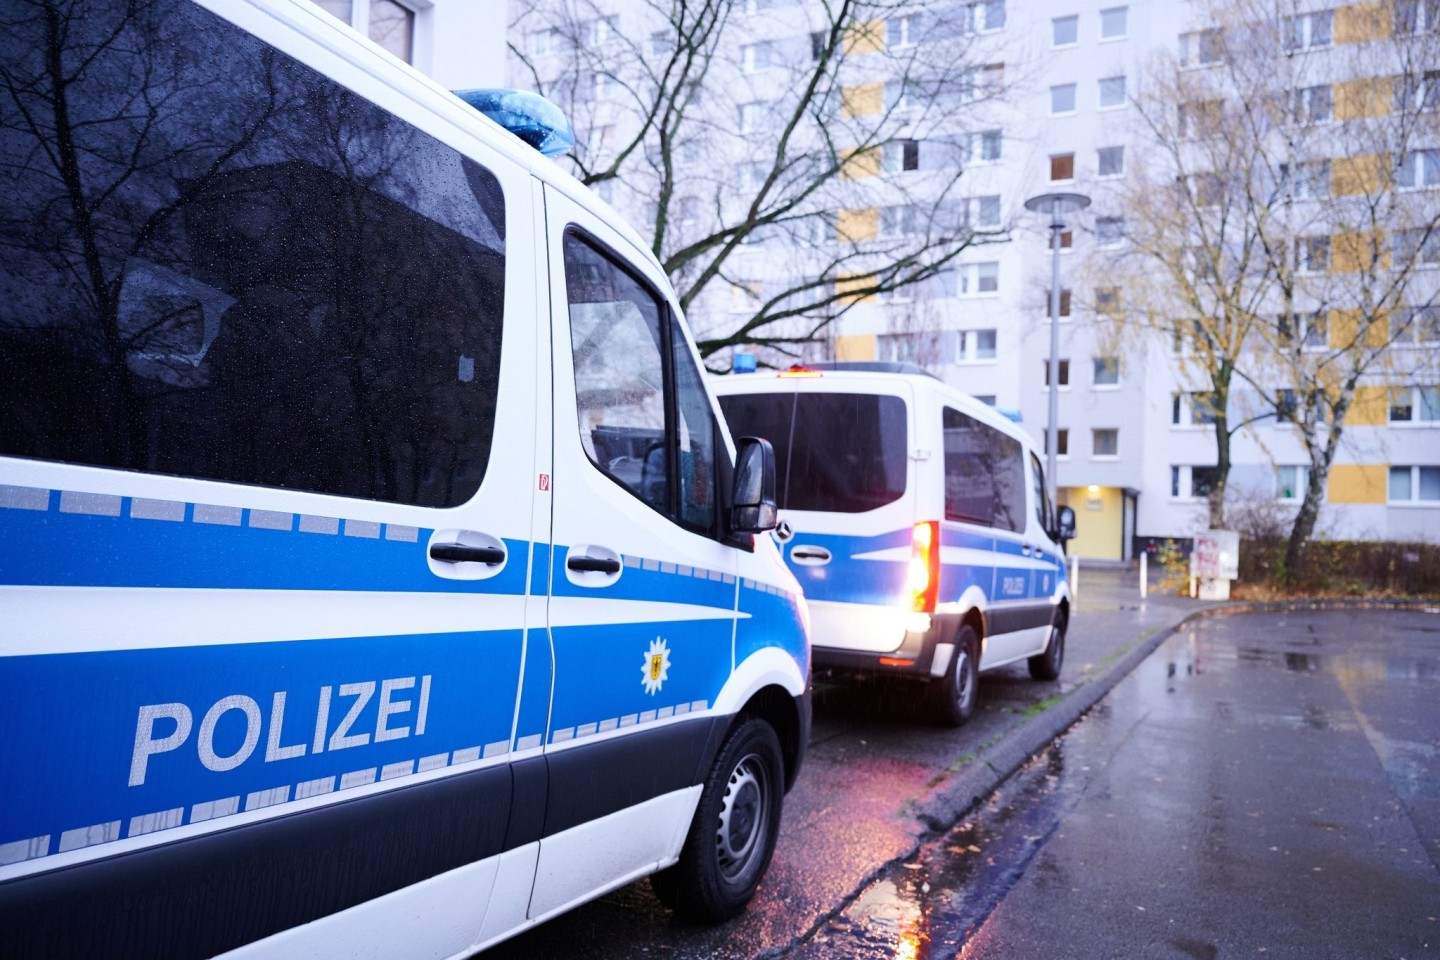 Fahrzeuge der Bundespolizei vor einem Wohnhaus in Berlin. Die Durchsuchung steht im Zusammenhang mit dem Verdacht auf Schleuserkriminalität.